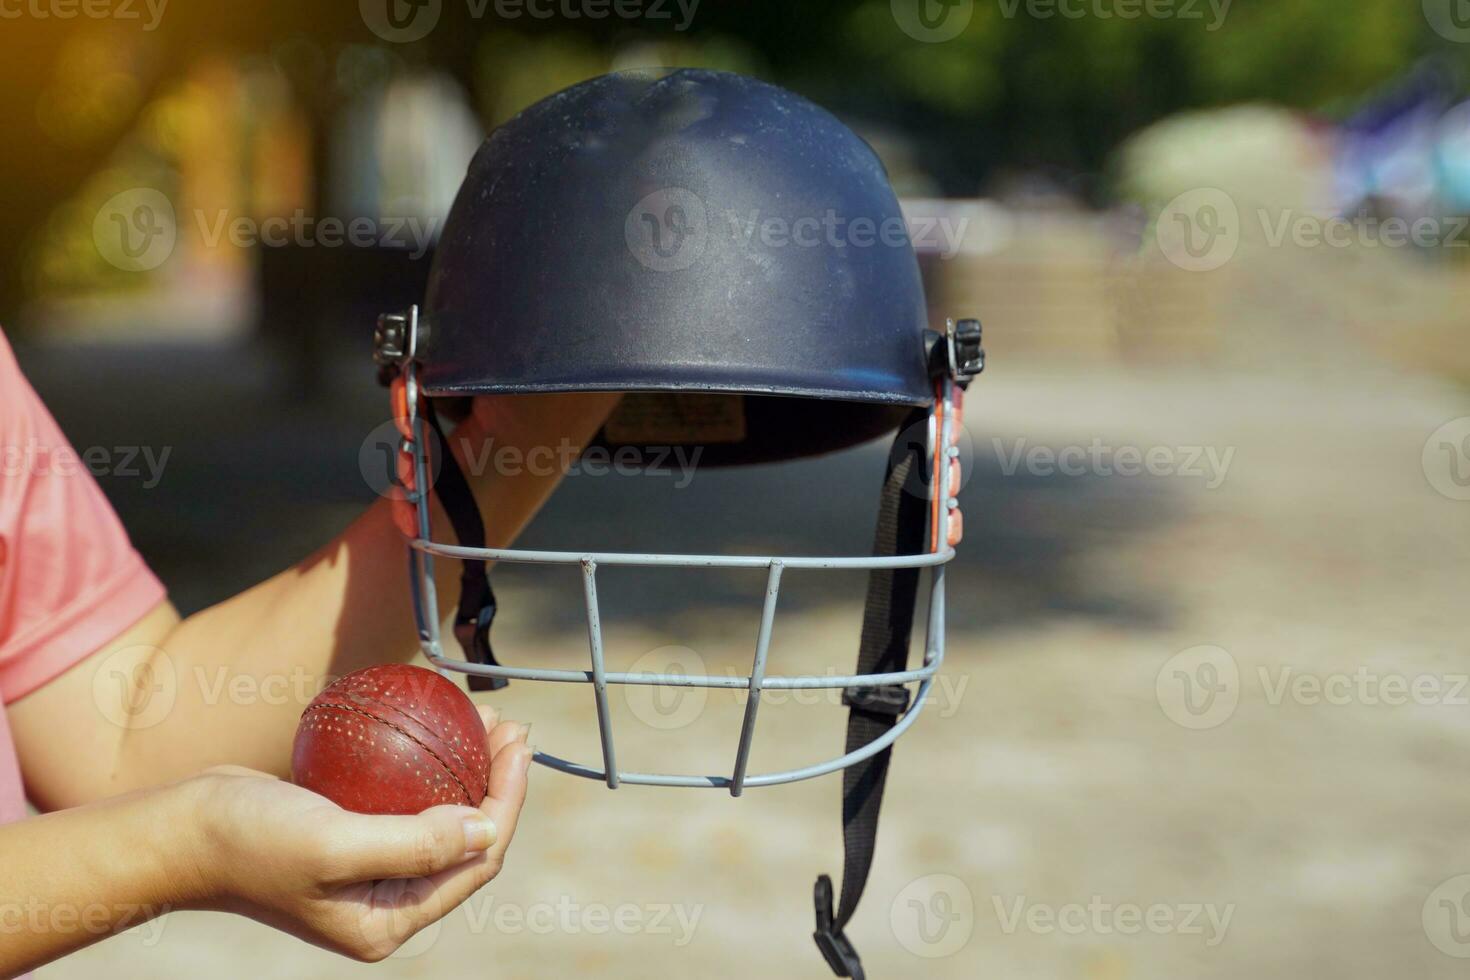 cricket spelare innehav cricket hjälm och cricket boll i händer på de åskådarplats framställning innan Träning på de fält. mjuk och selektiv fokus. foto